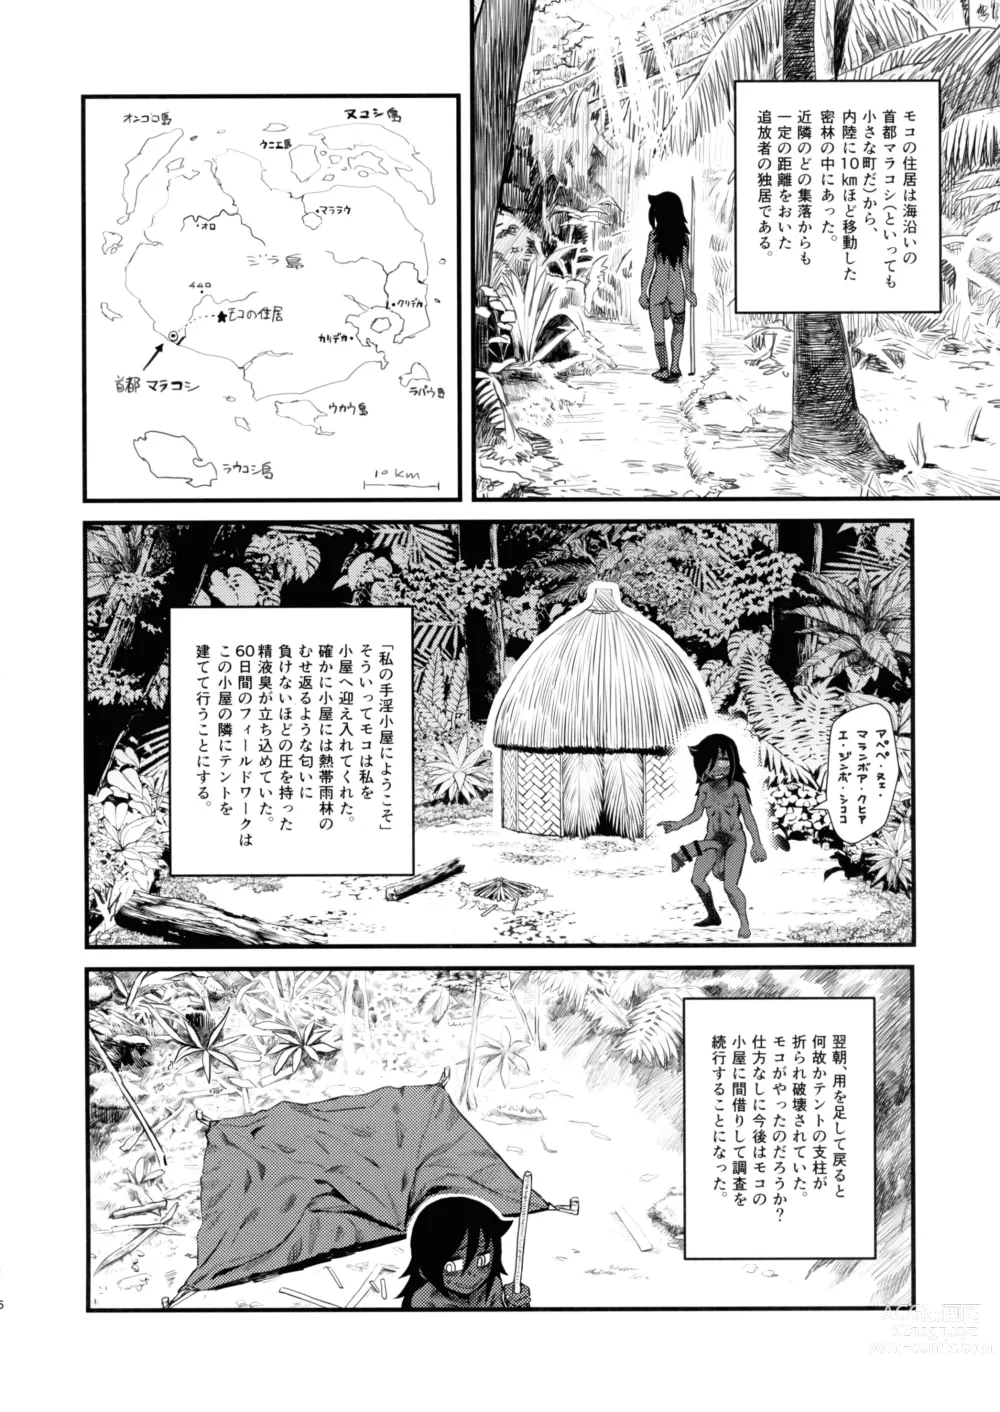 Page 5 of doujinshi Dankon no Ethnography -Malakovia no Sei to Haisetsu-